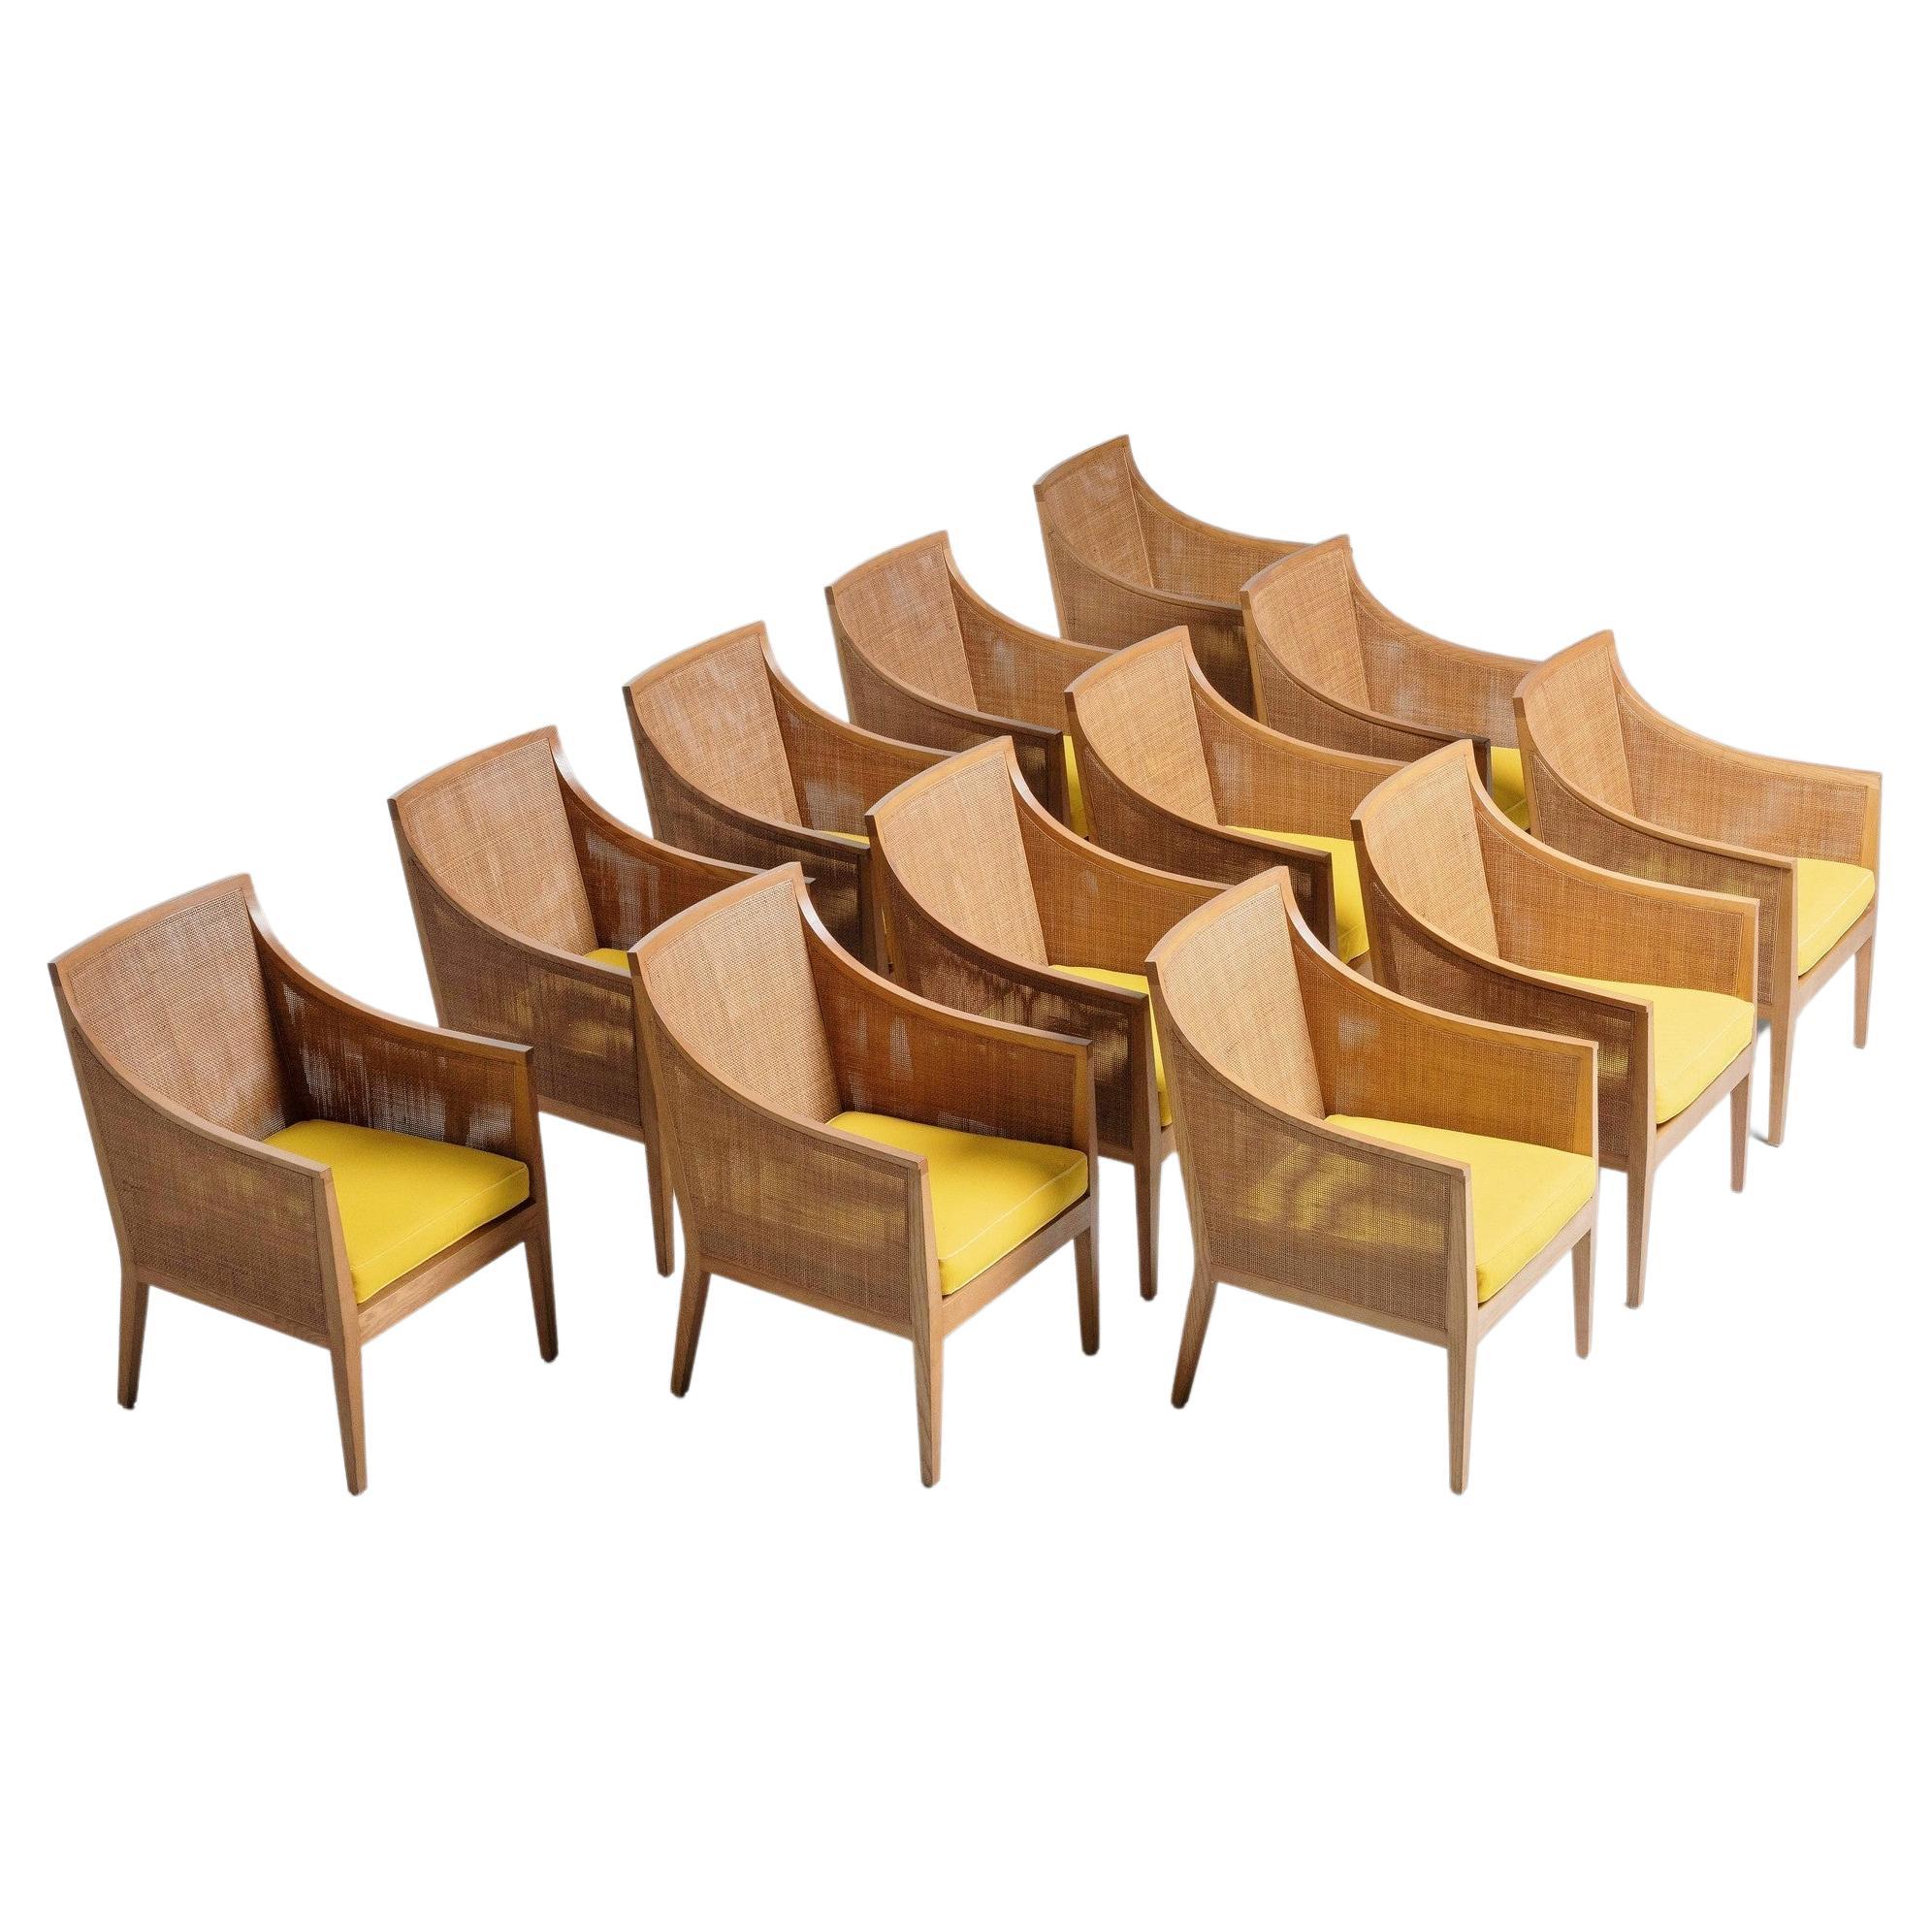 Antonio Citterio Arm Chairs Flexform Italy 1970